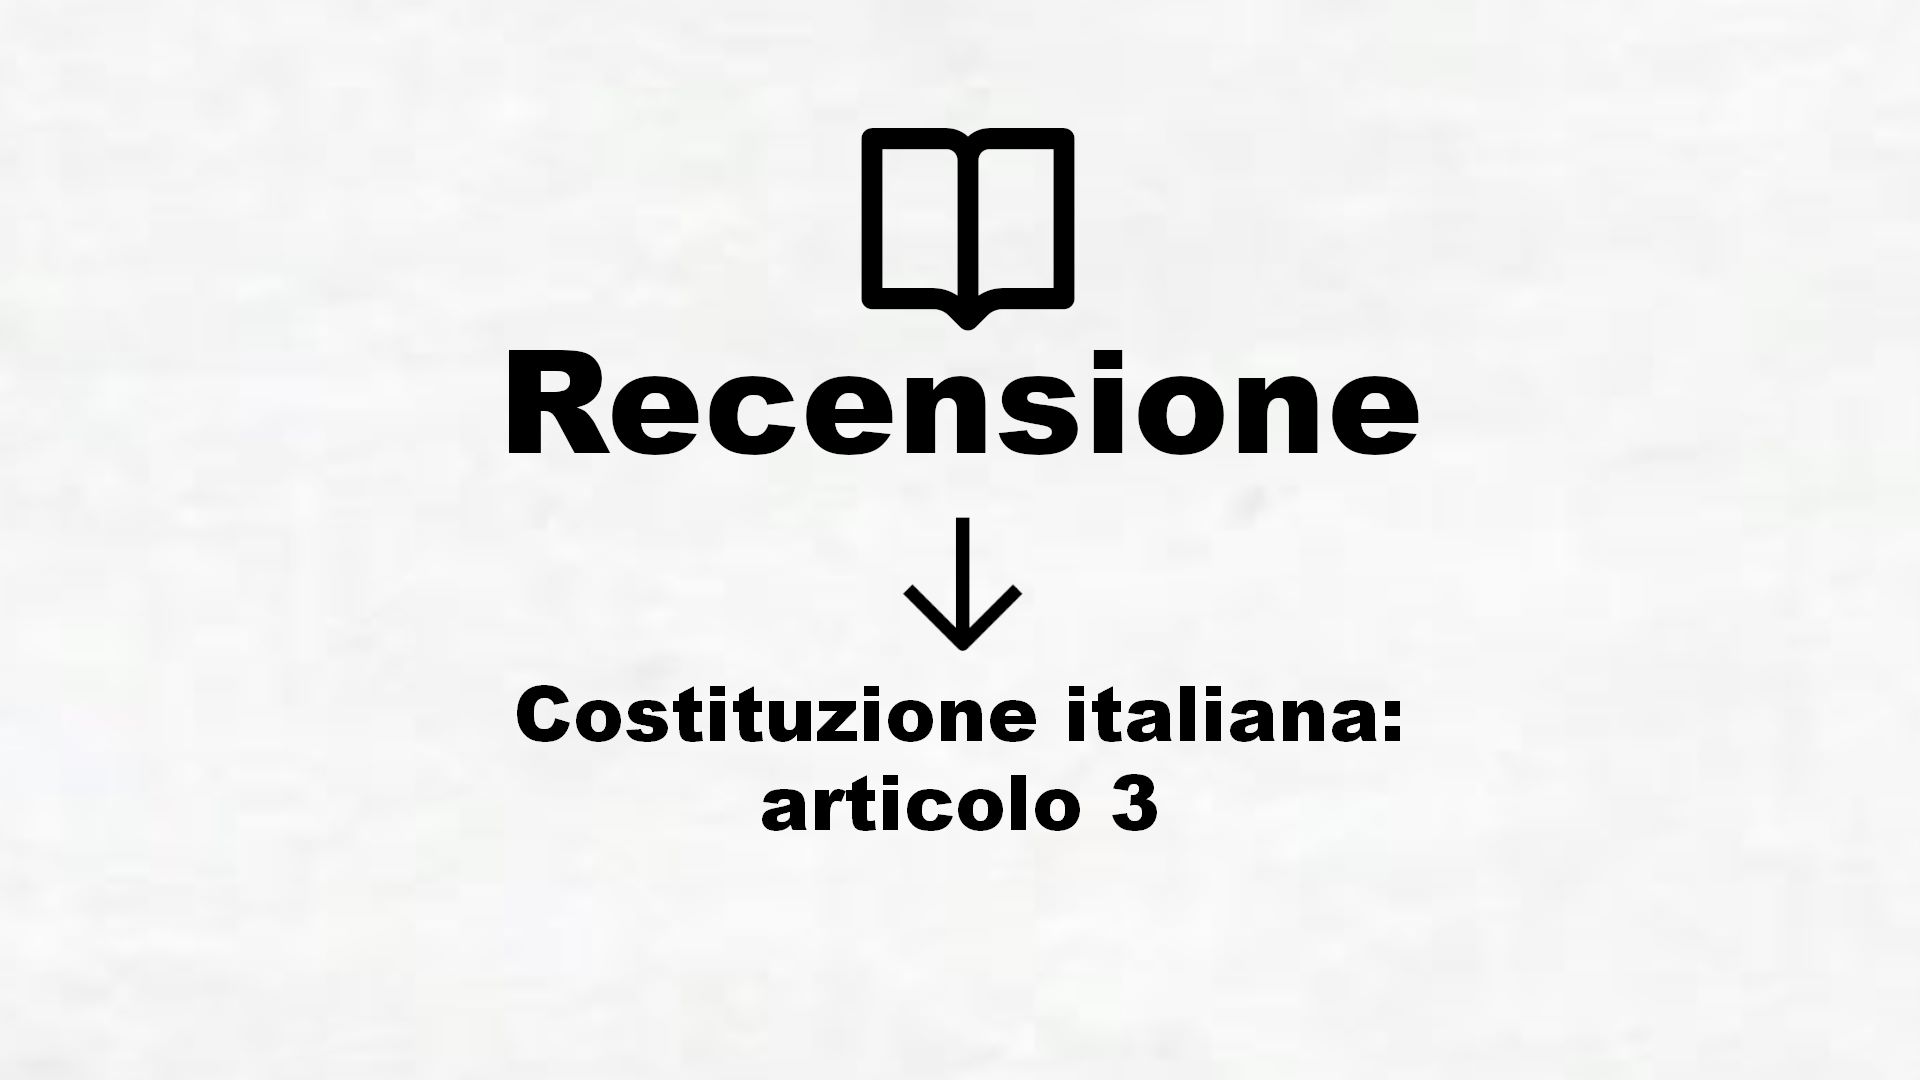 Costituzione italiana: articolo 3 – Recensione Libro